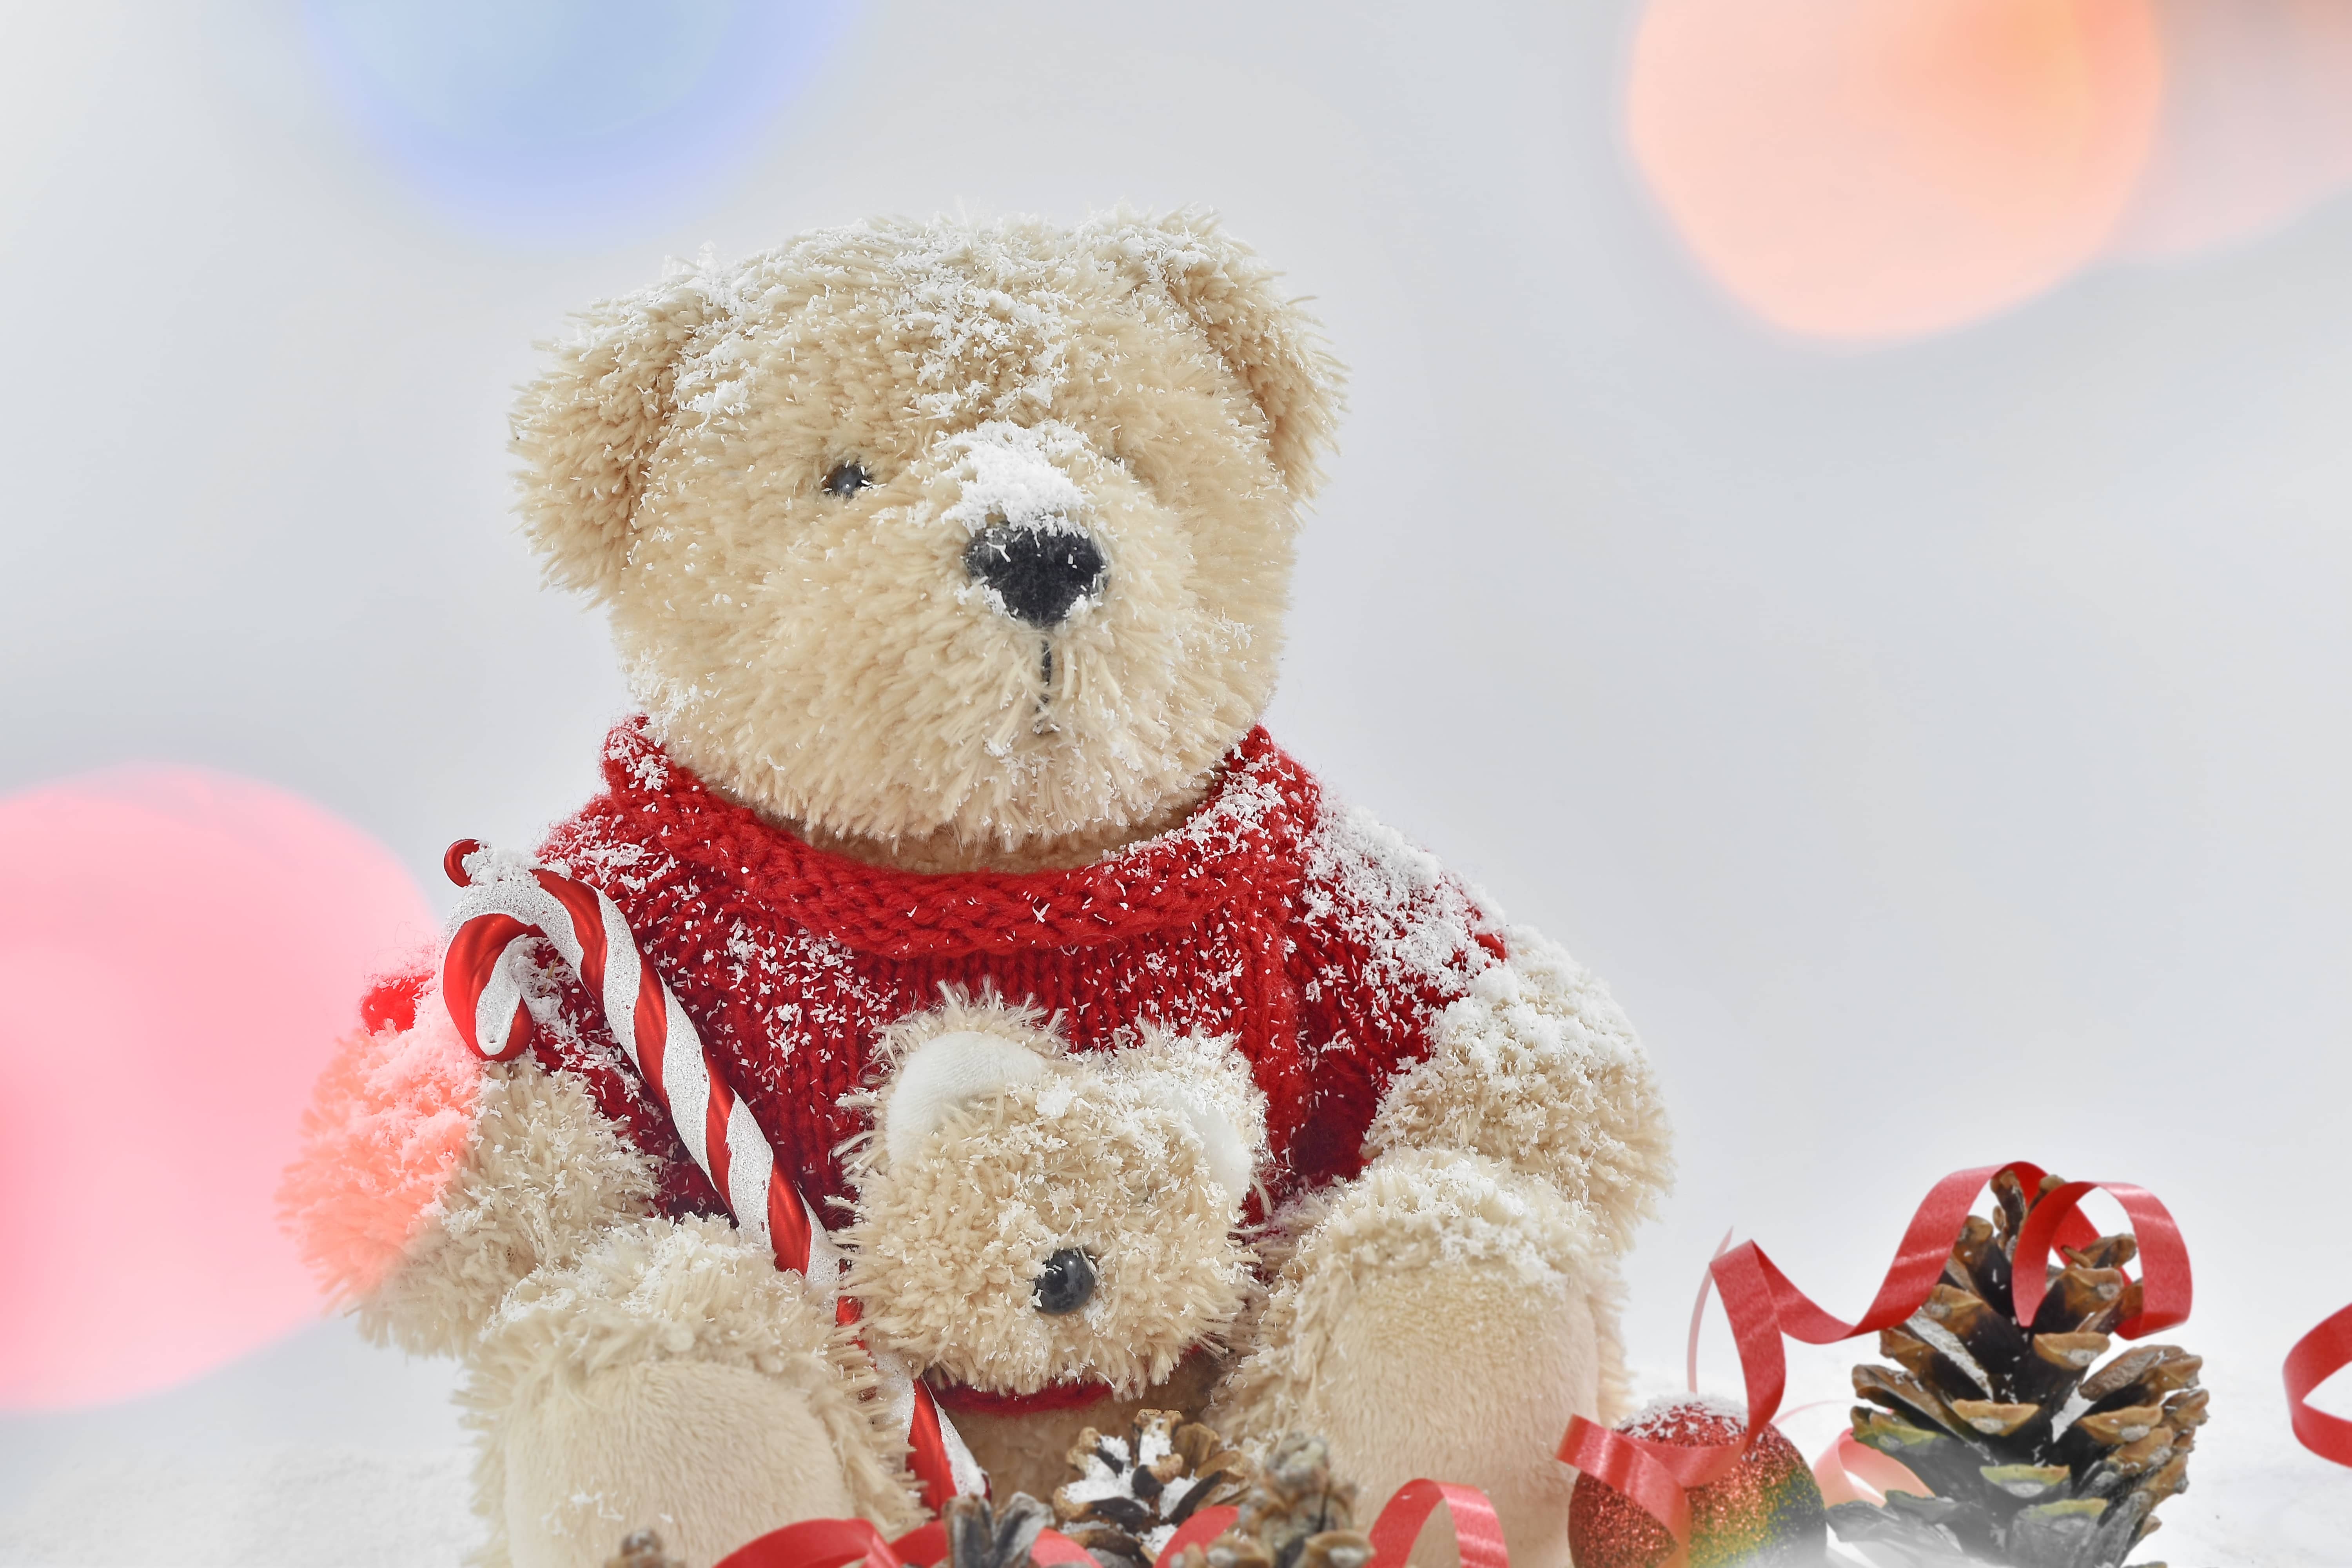 基督教, 圣诞节, 假日, 泰迪熊玩具, 动物, 熊, 棕色, 庆祝, 童年, 冷